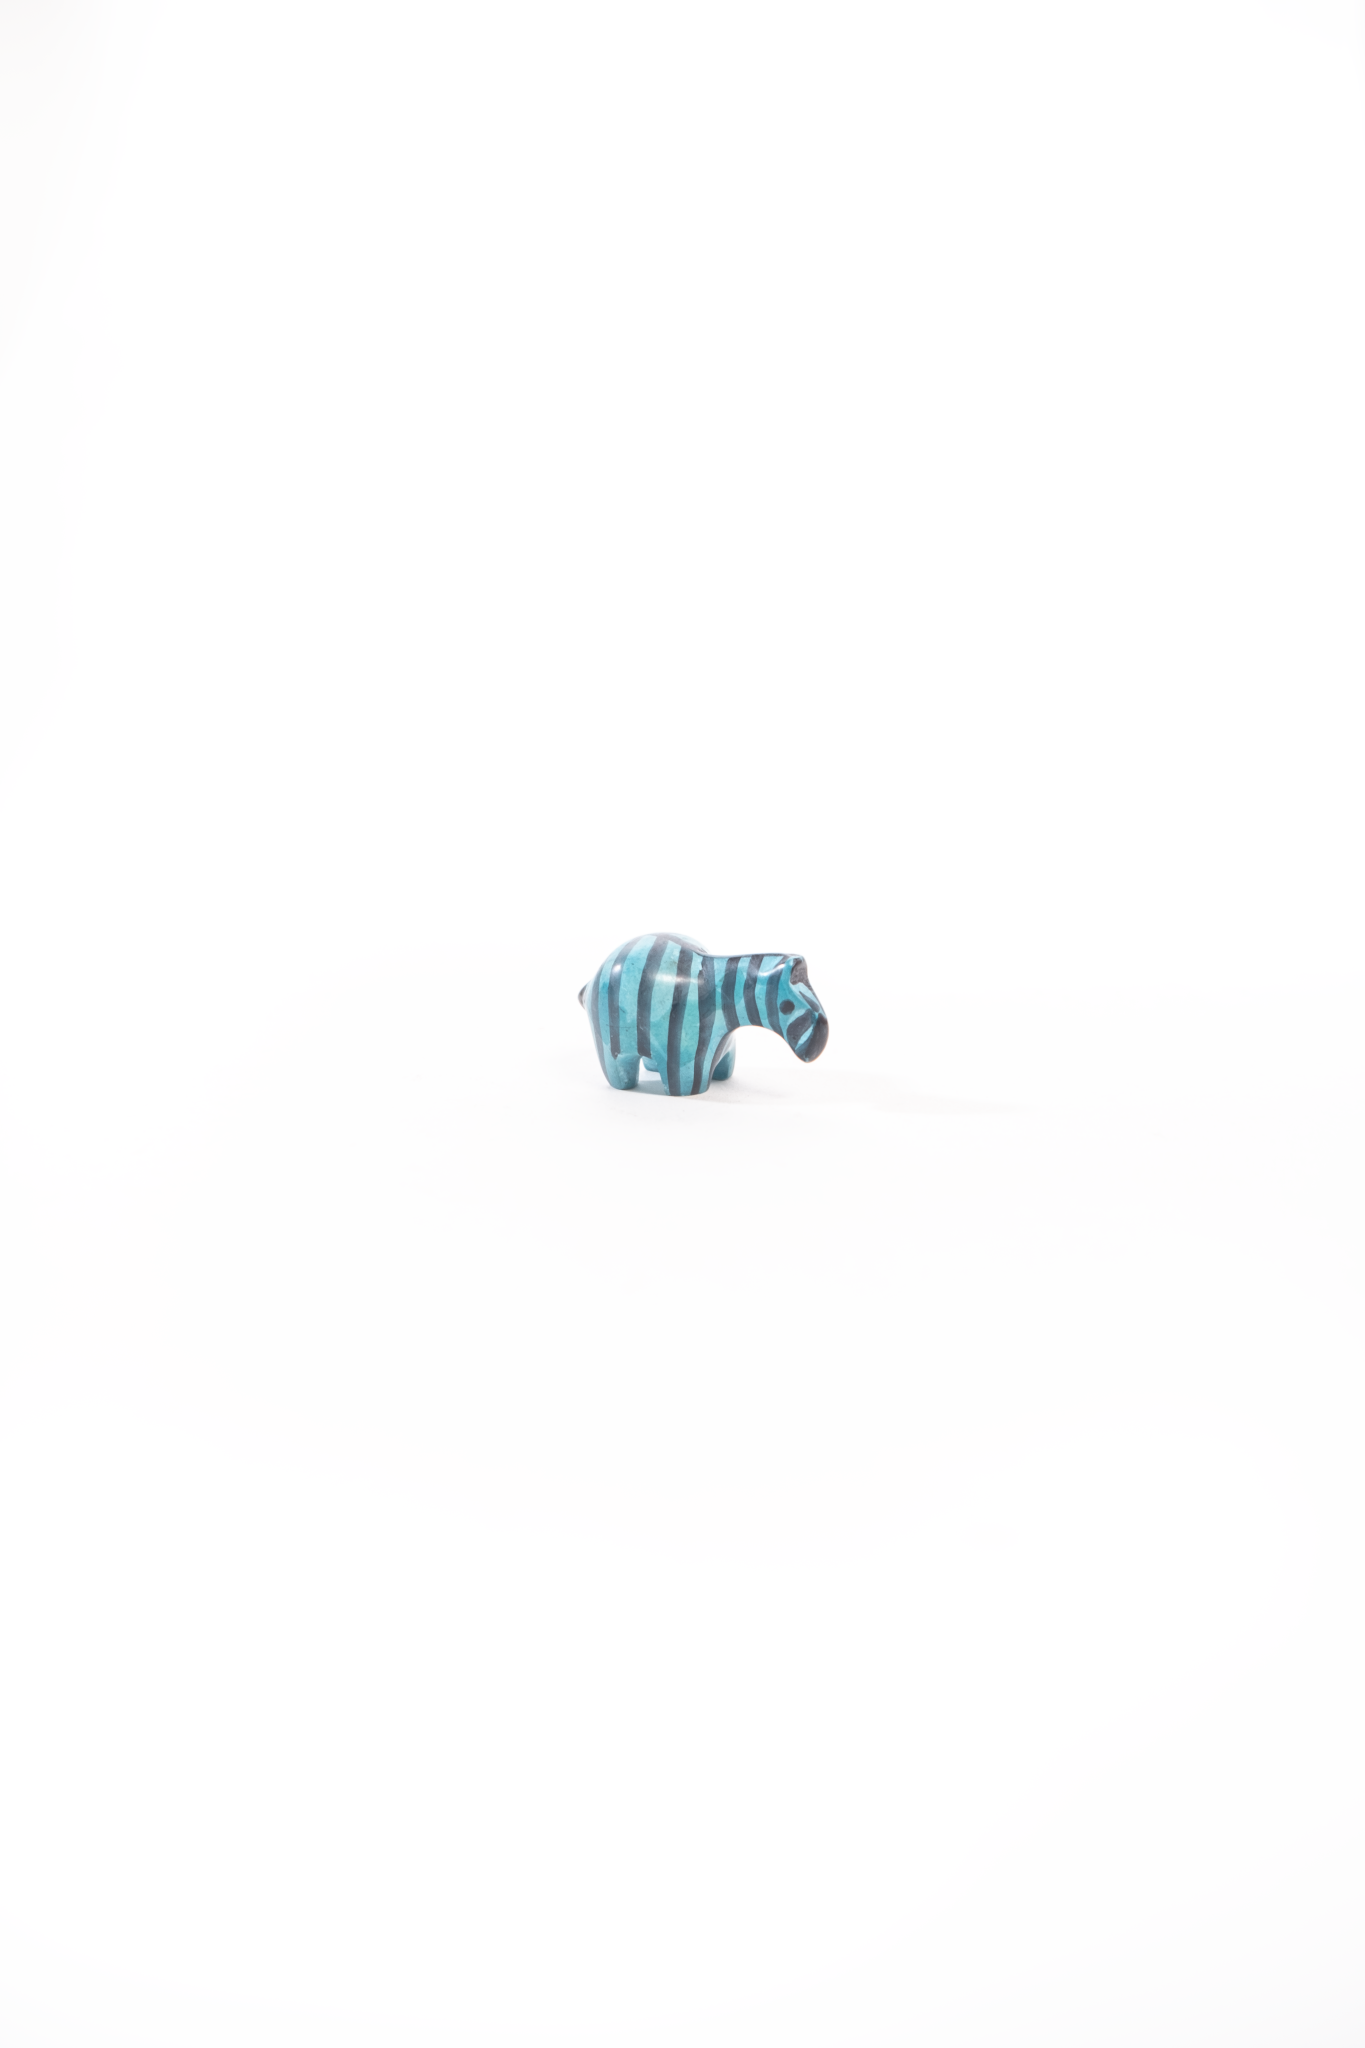 Tiny Soapstone zebra animal Figurine